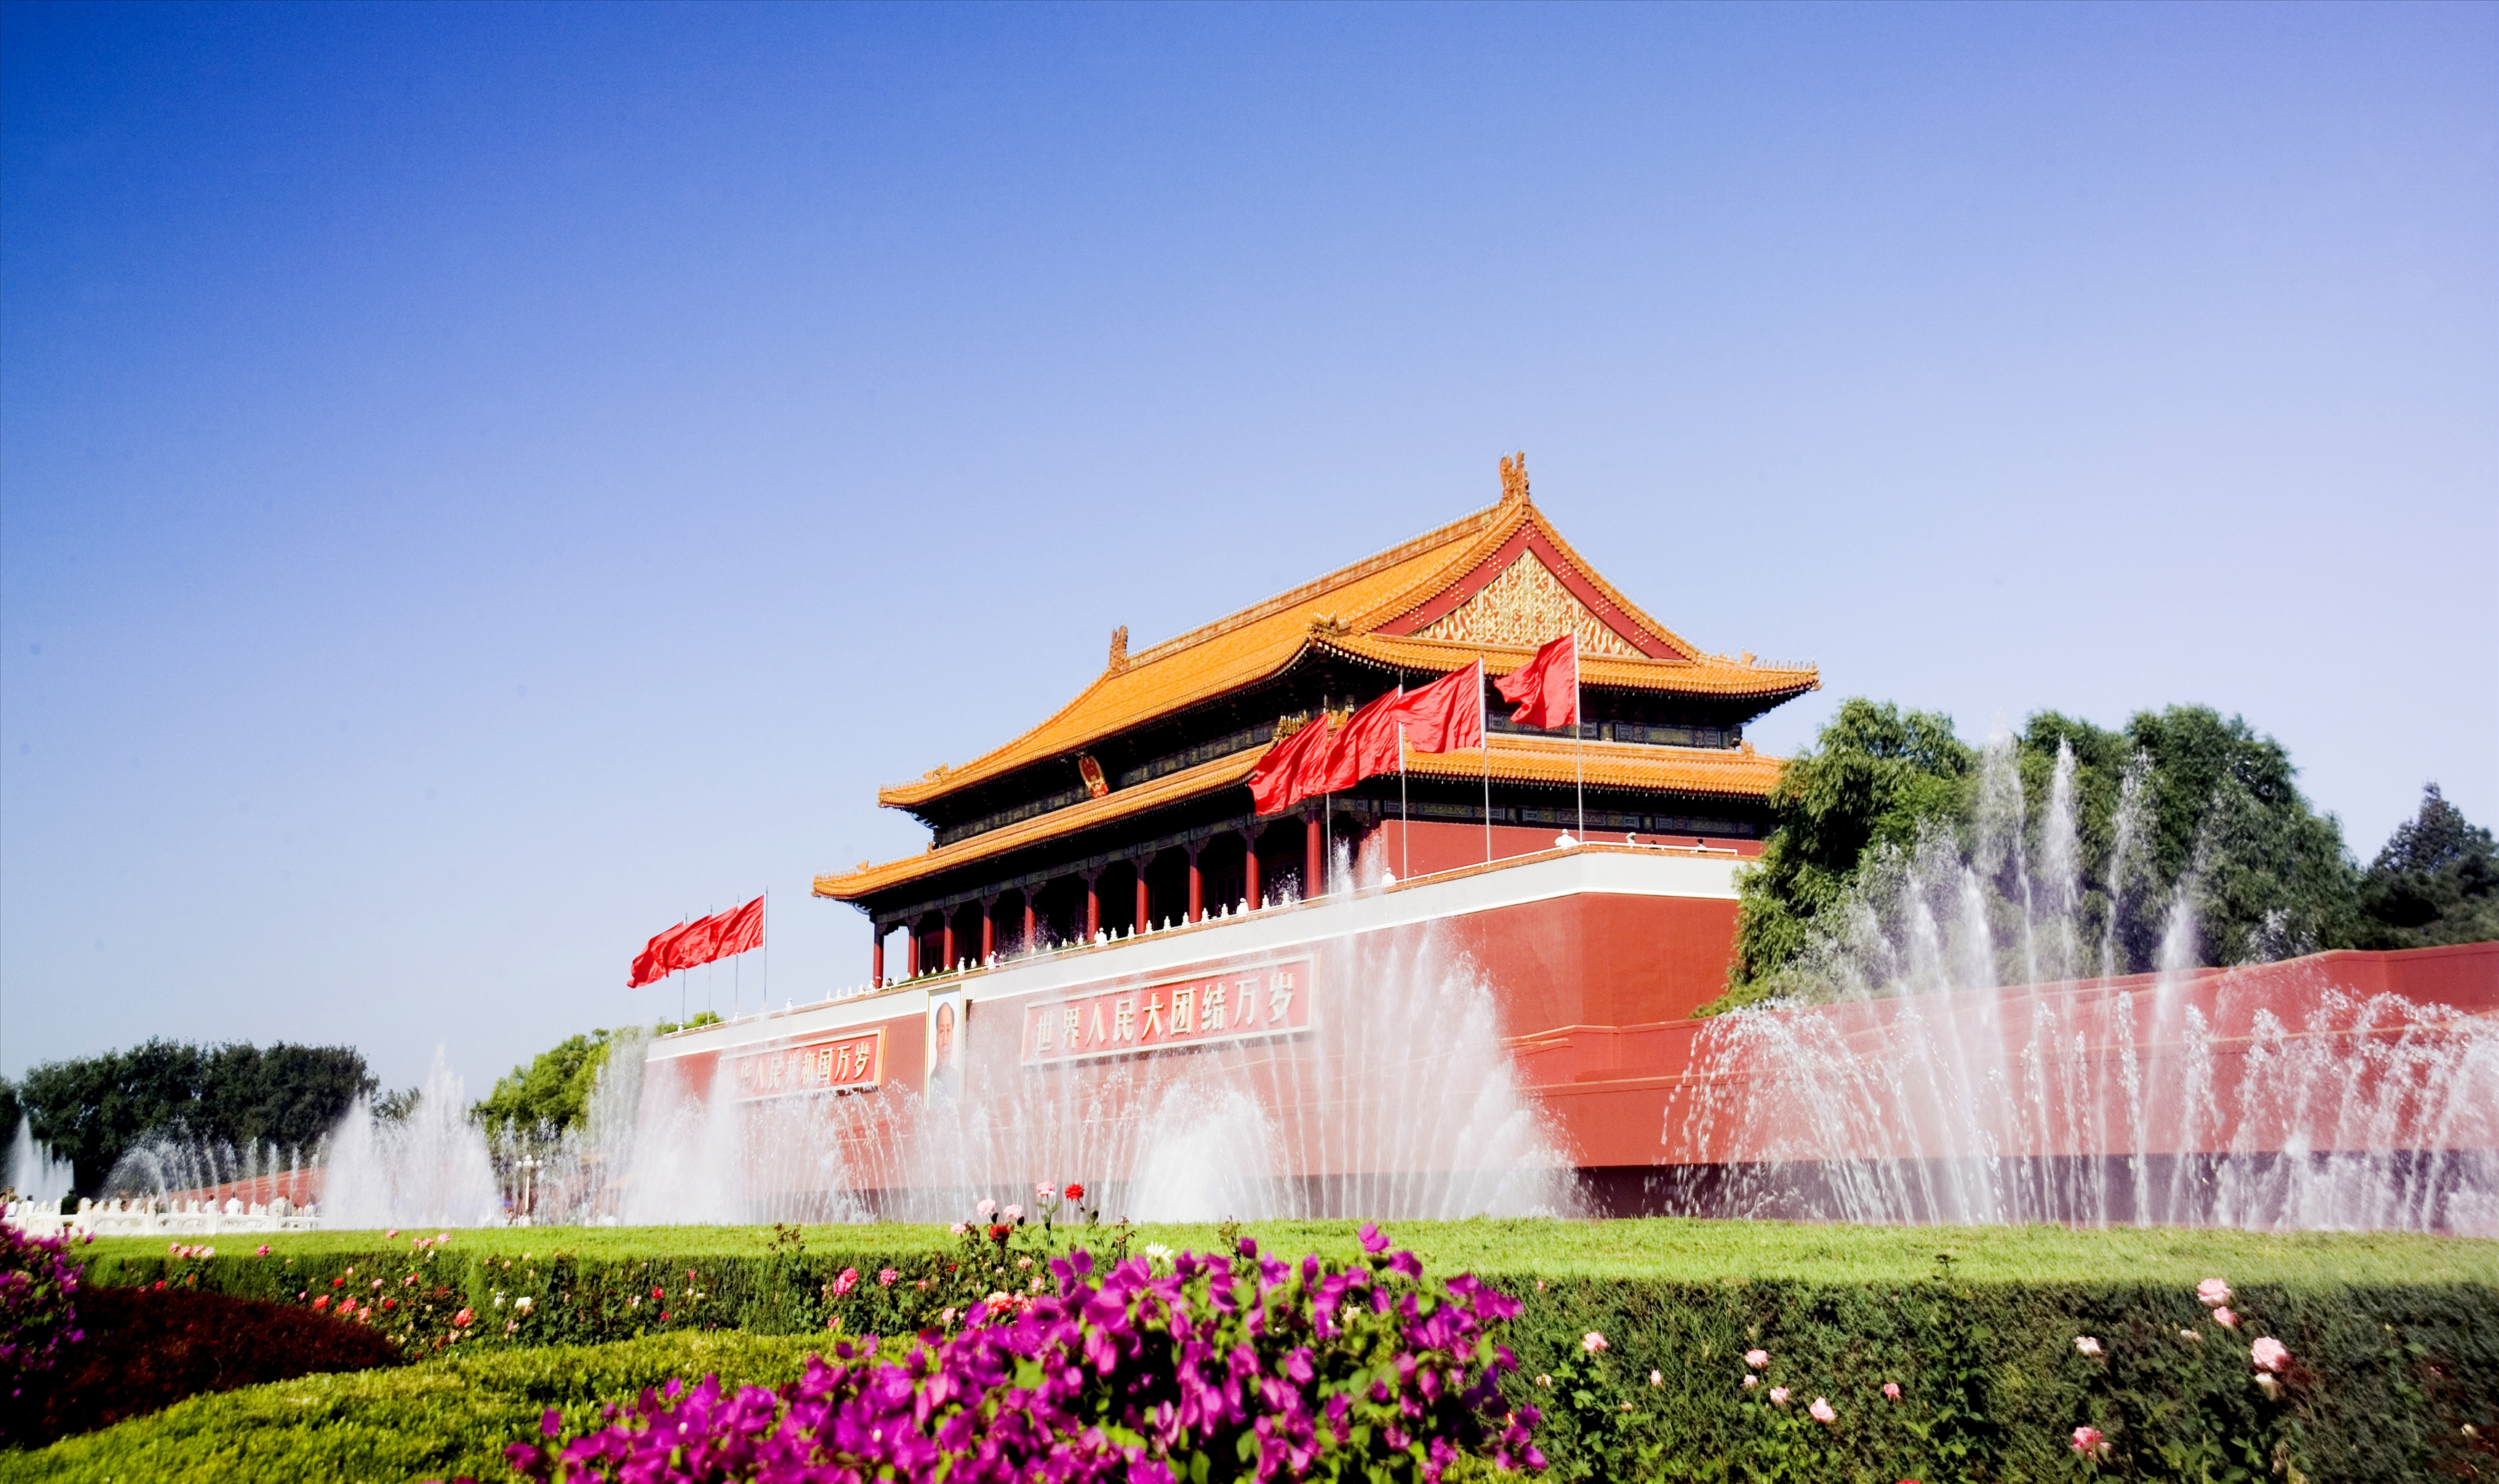 向西班牙人安利我大首都北京,这些著名景点的